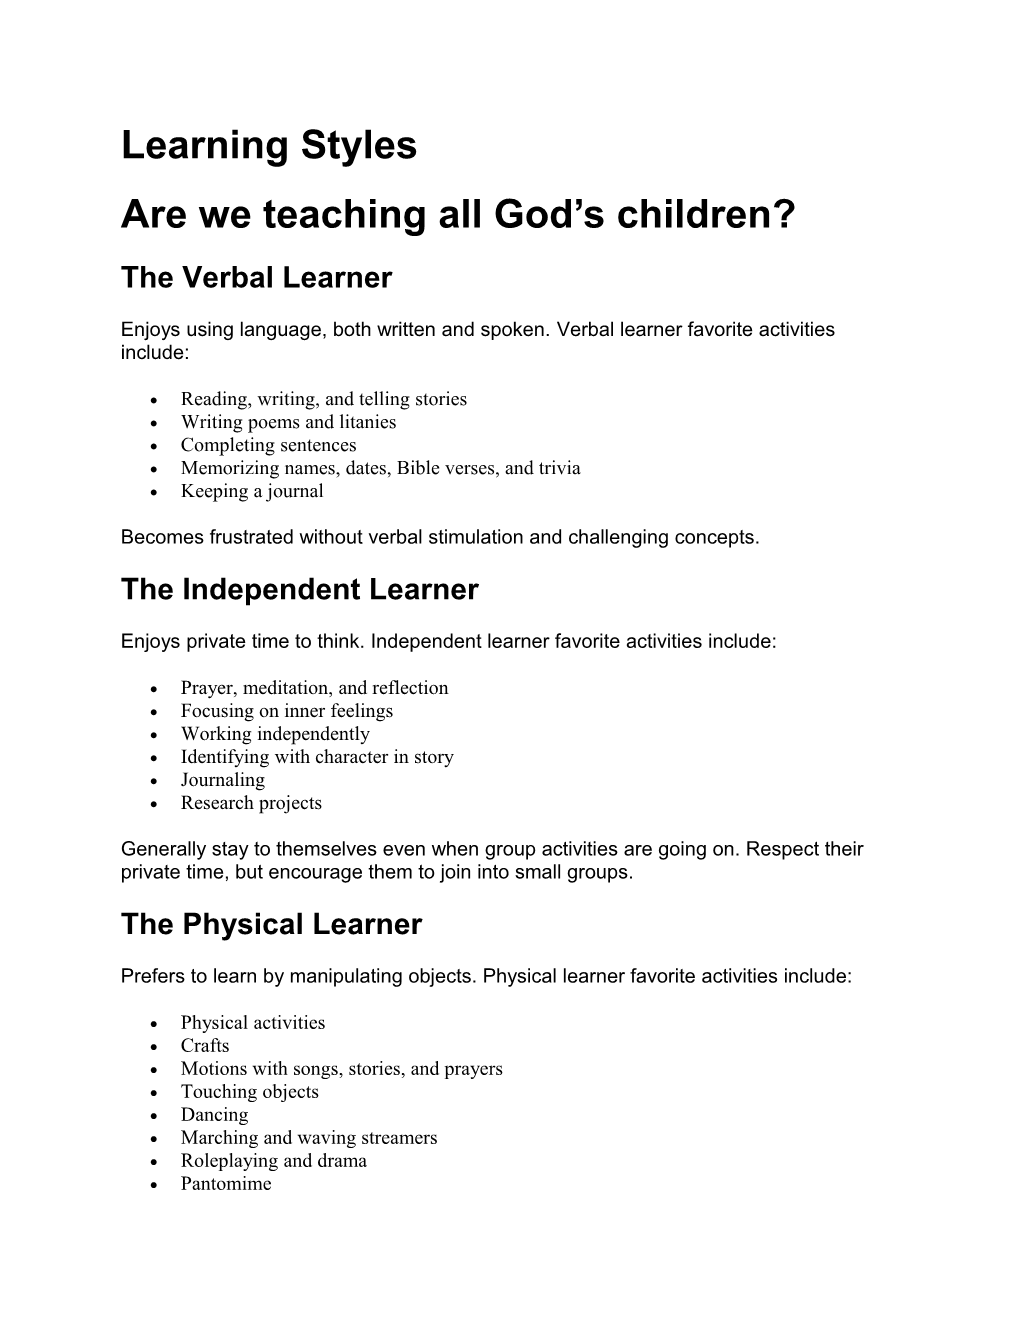 Are We Teaching All God S Children?